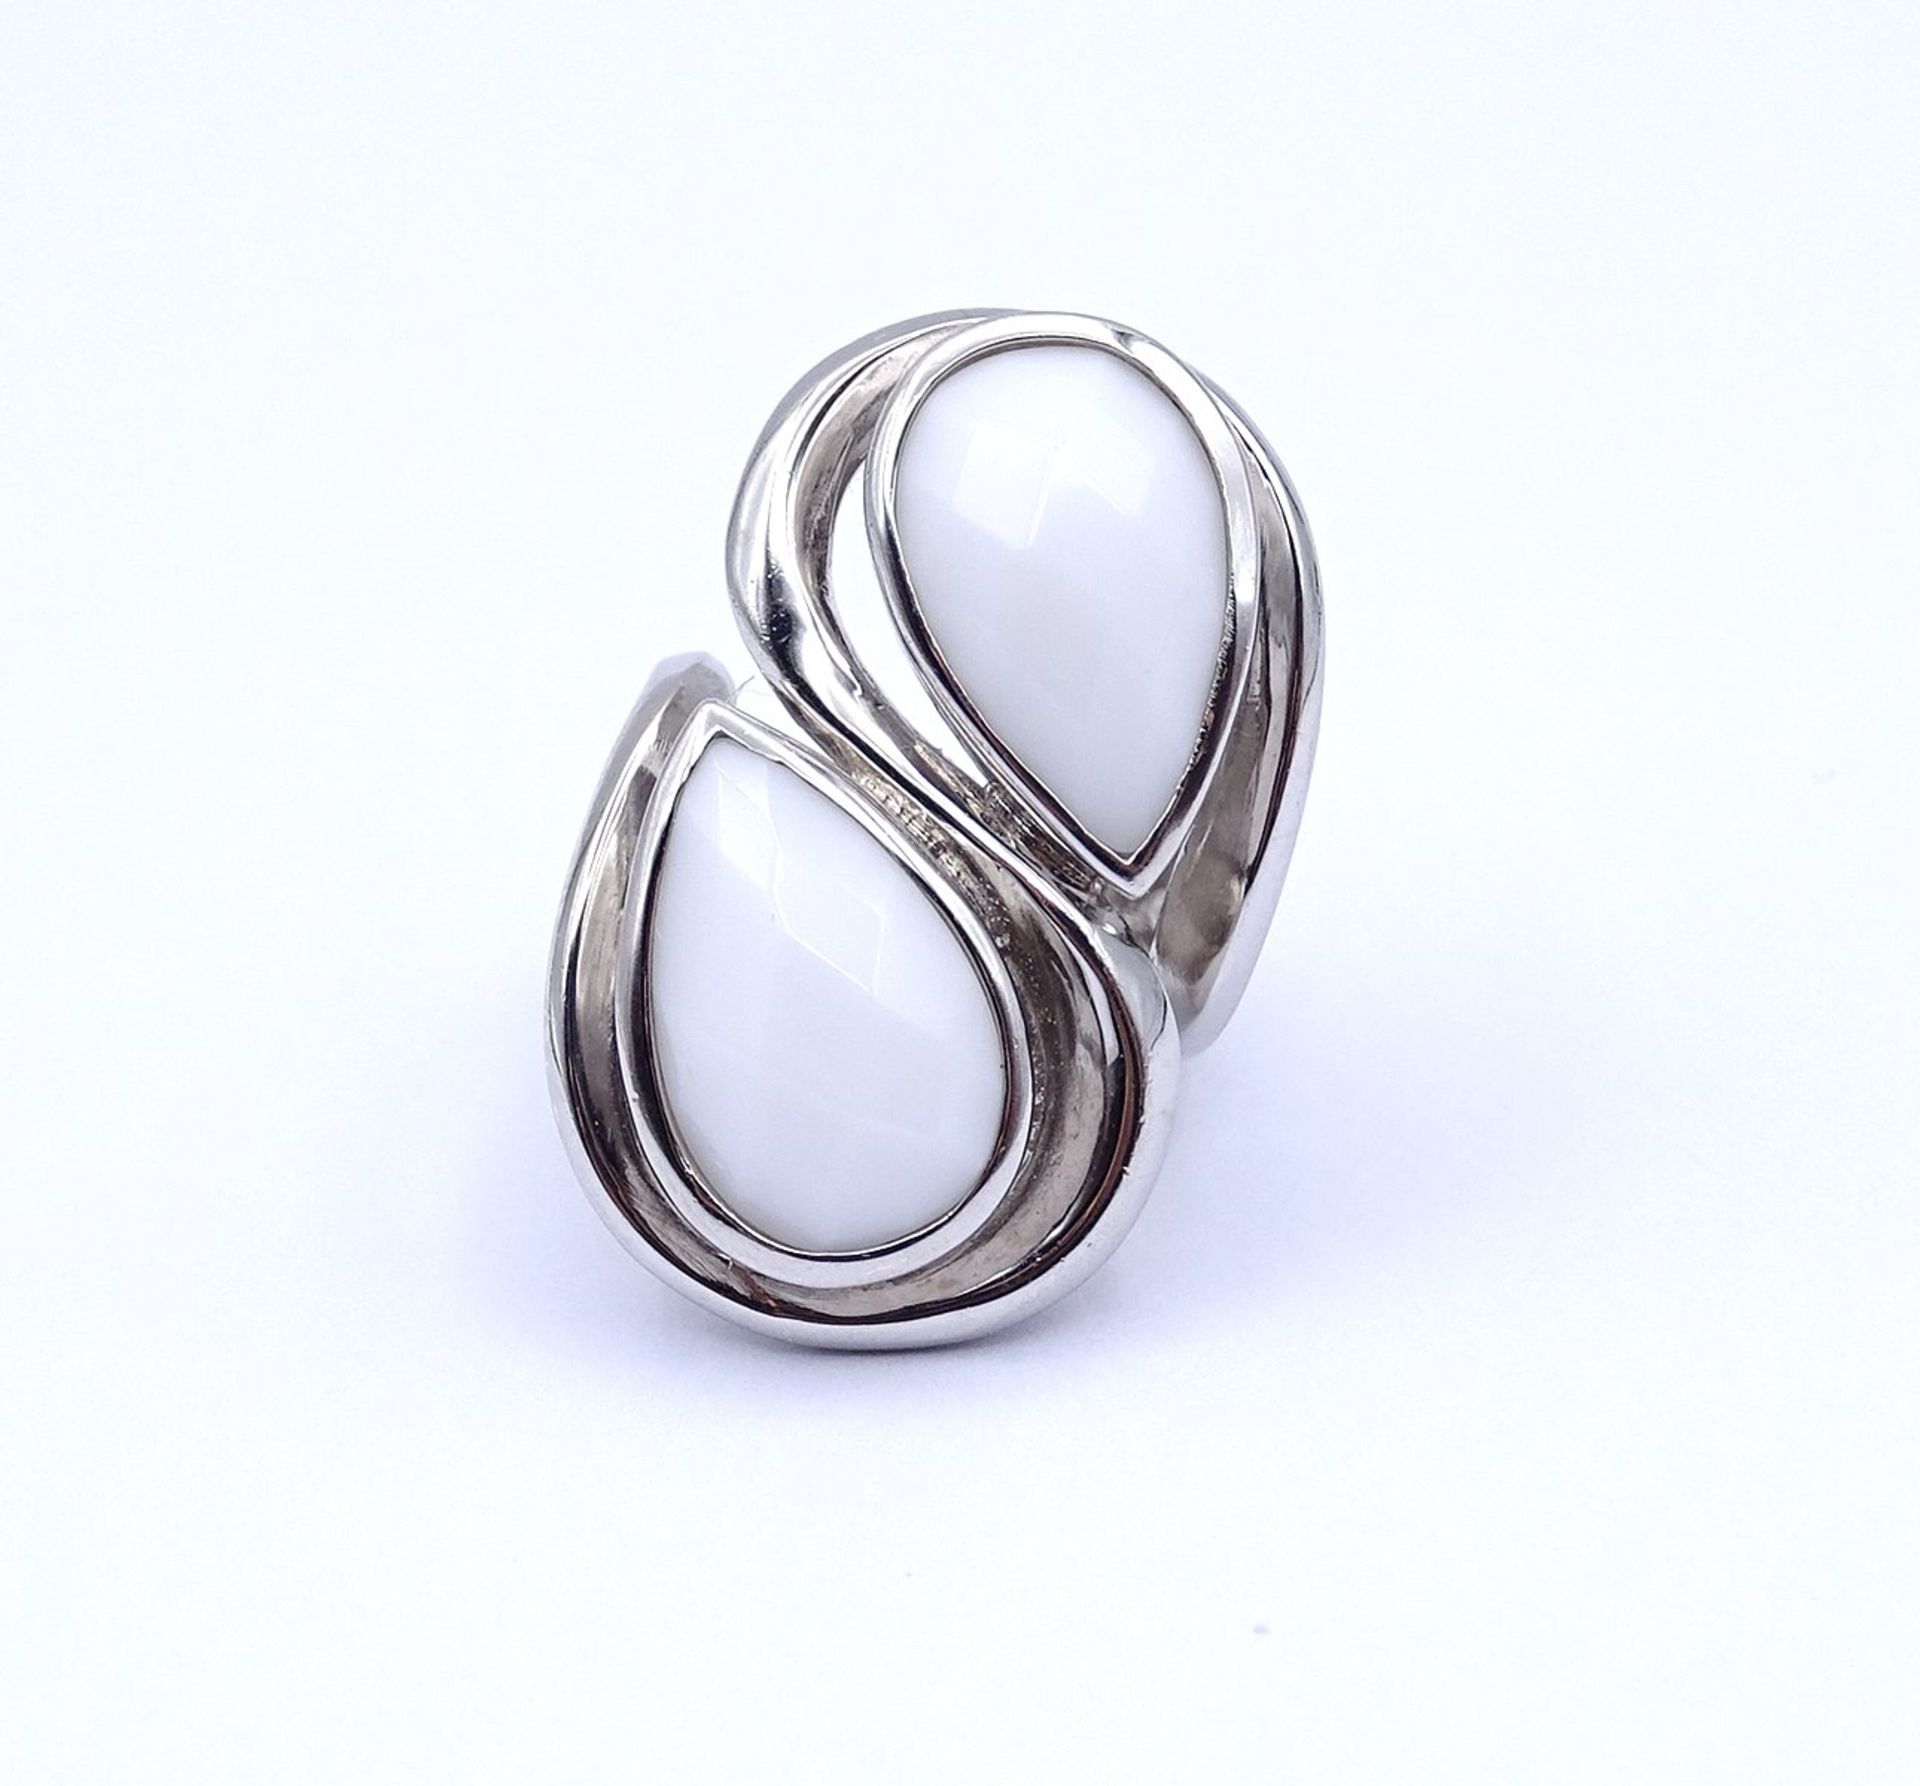 925er Silber Ring mit 2 weißen facc. Steinen, 15,8g., RG 52